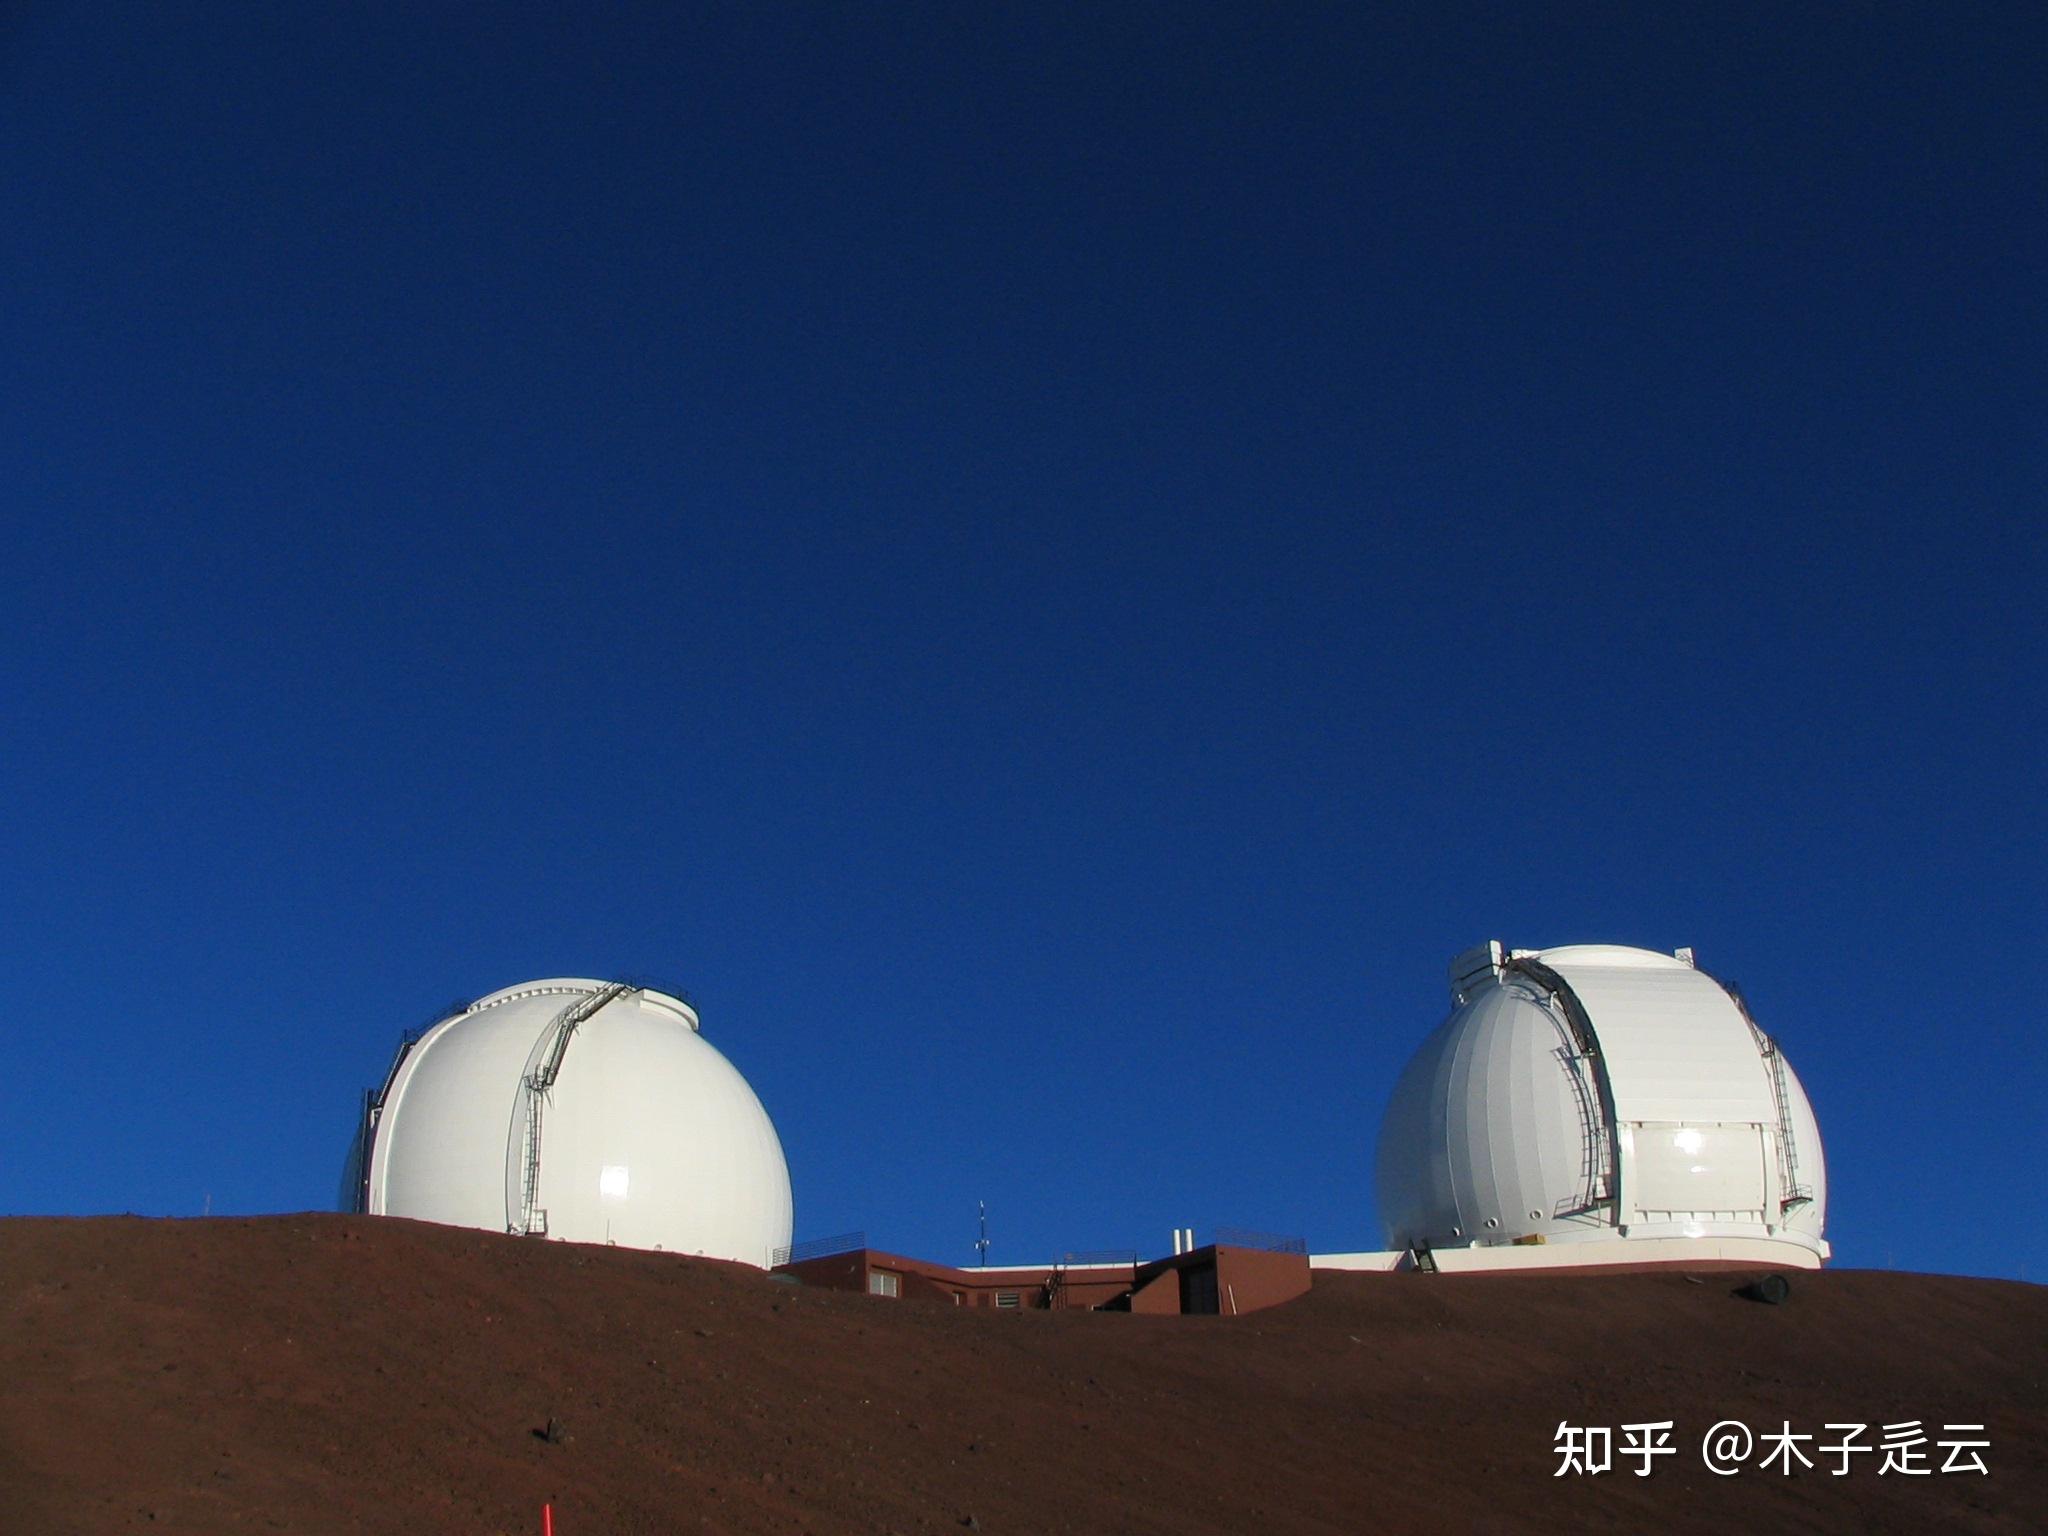 夏威夷群岛是地球上最适合天文观测/欣赏星空的地方吗？为什么？ - 知乎